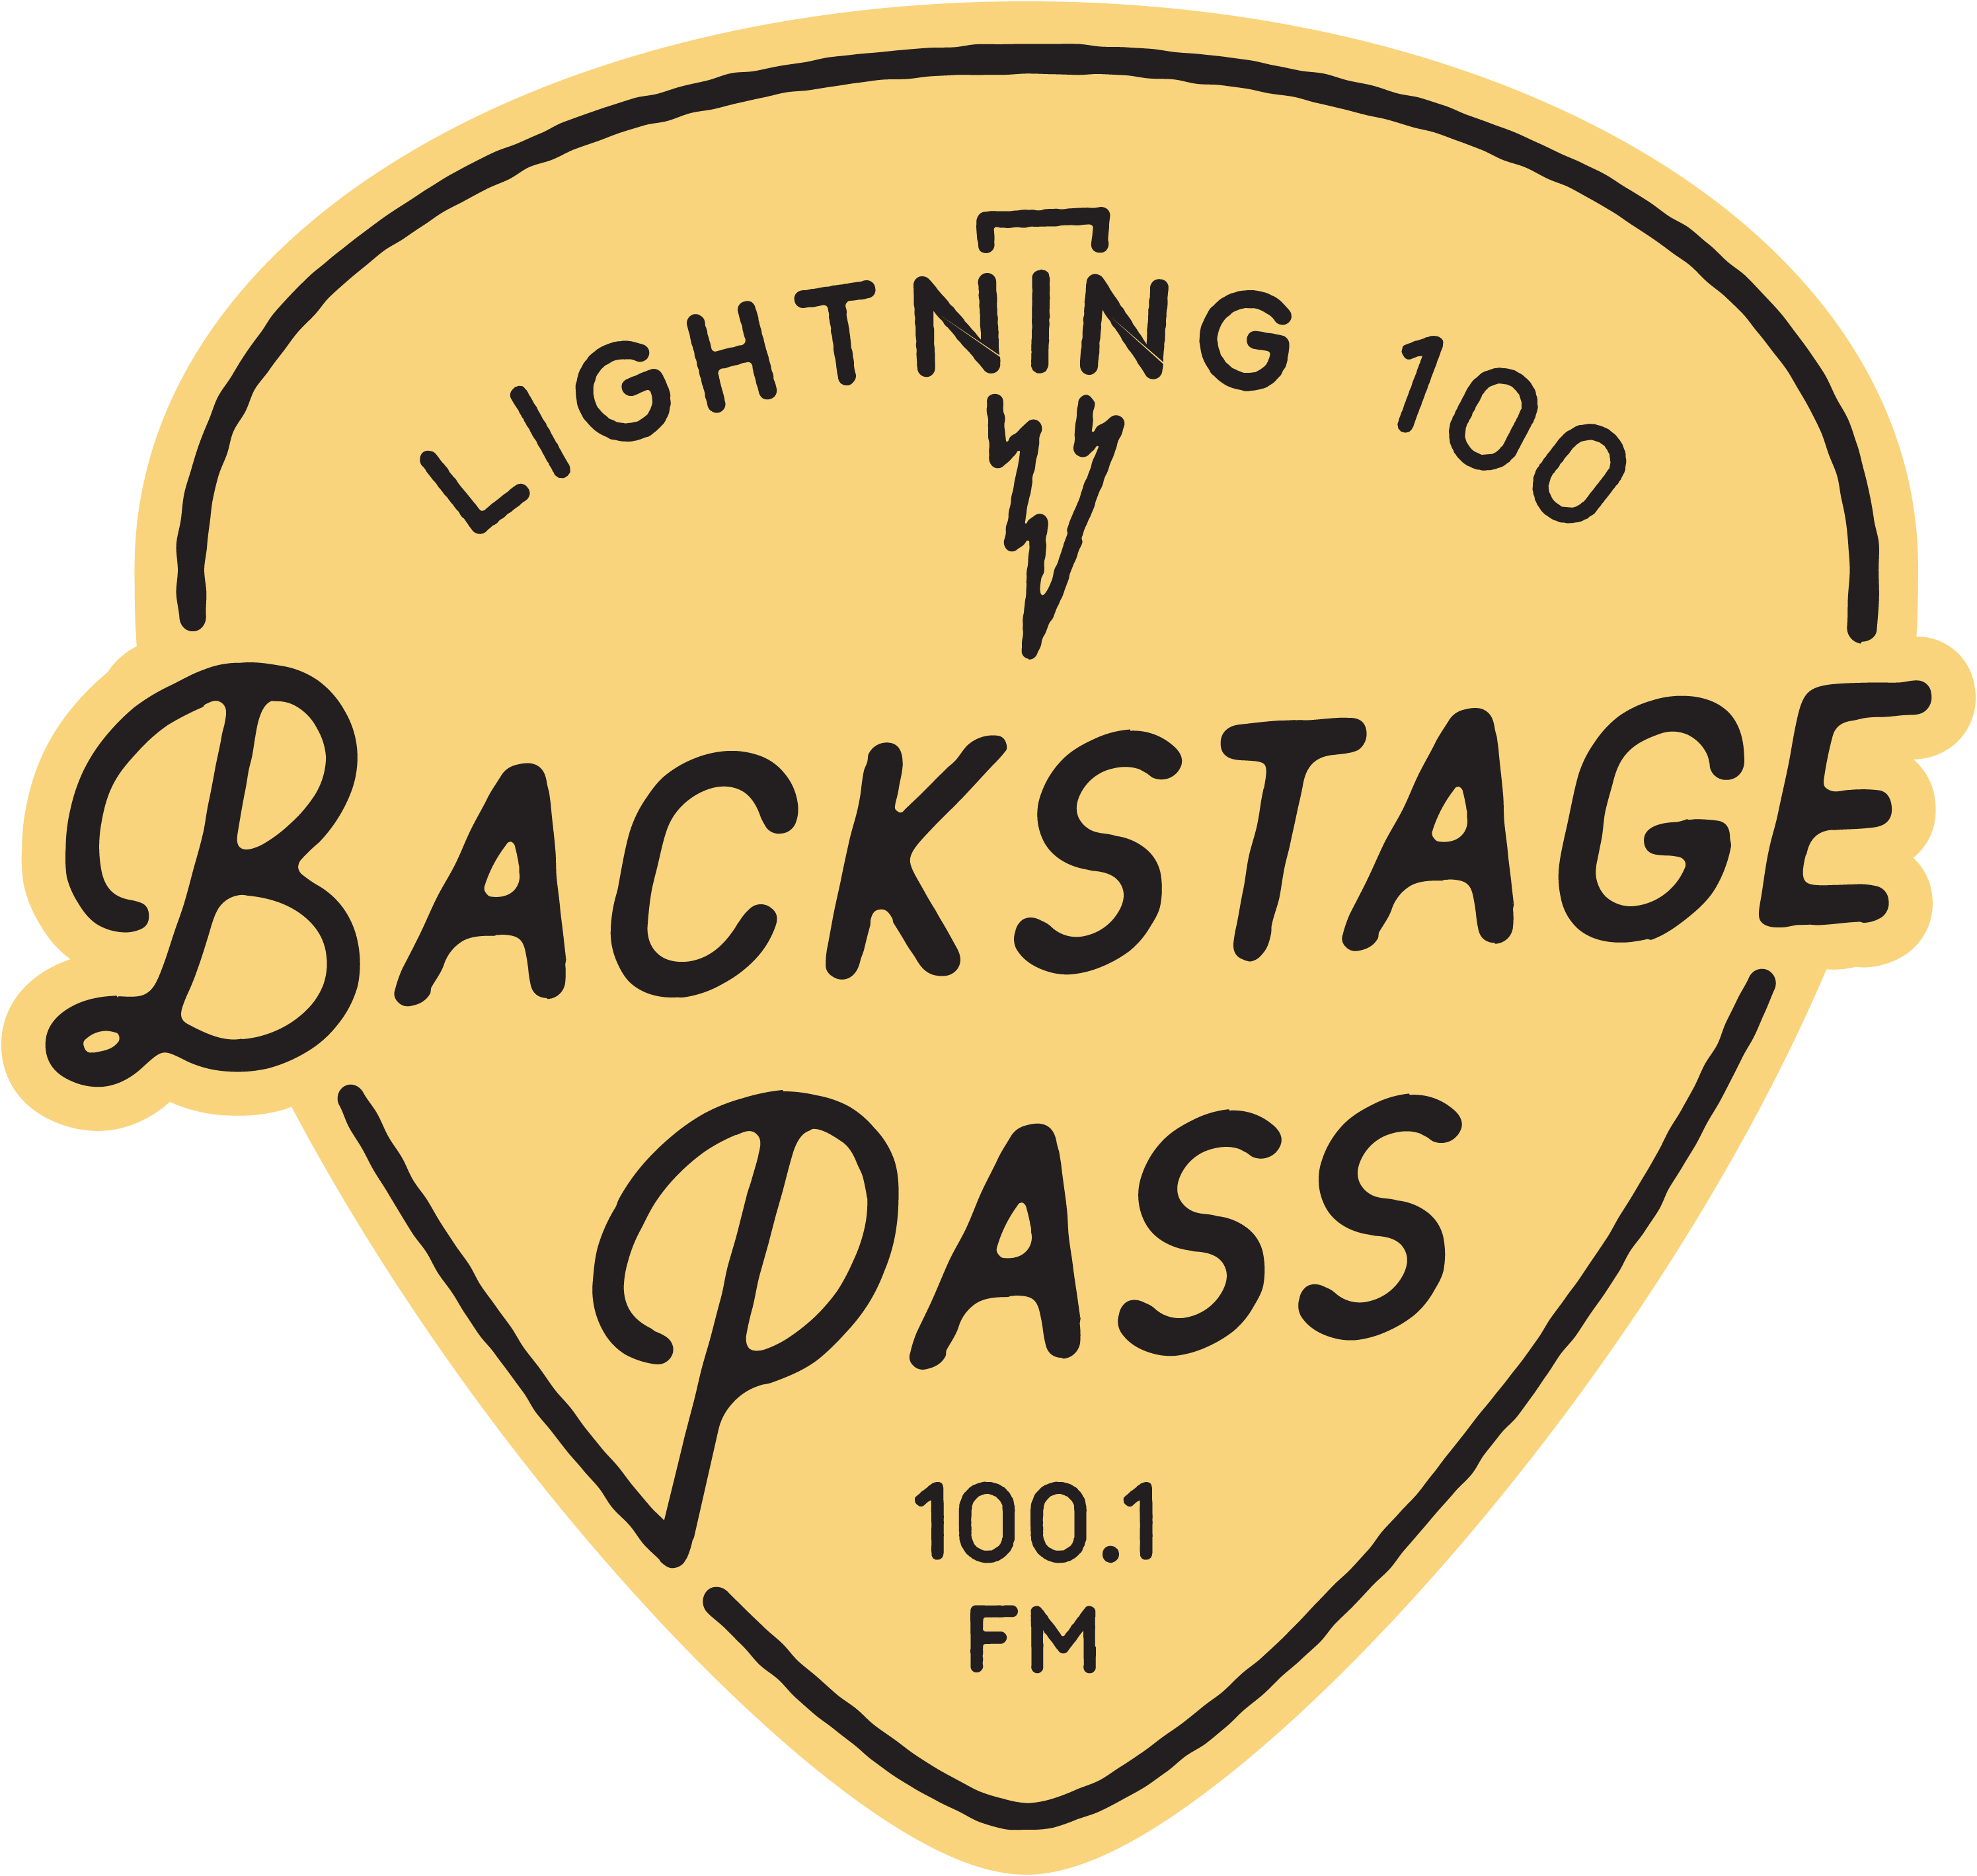 Lightning 100 Nashville S Independent Radio 100 1 Fm Wrlt